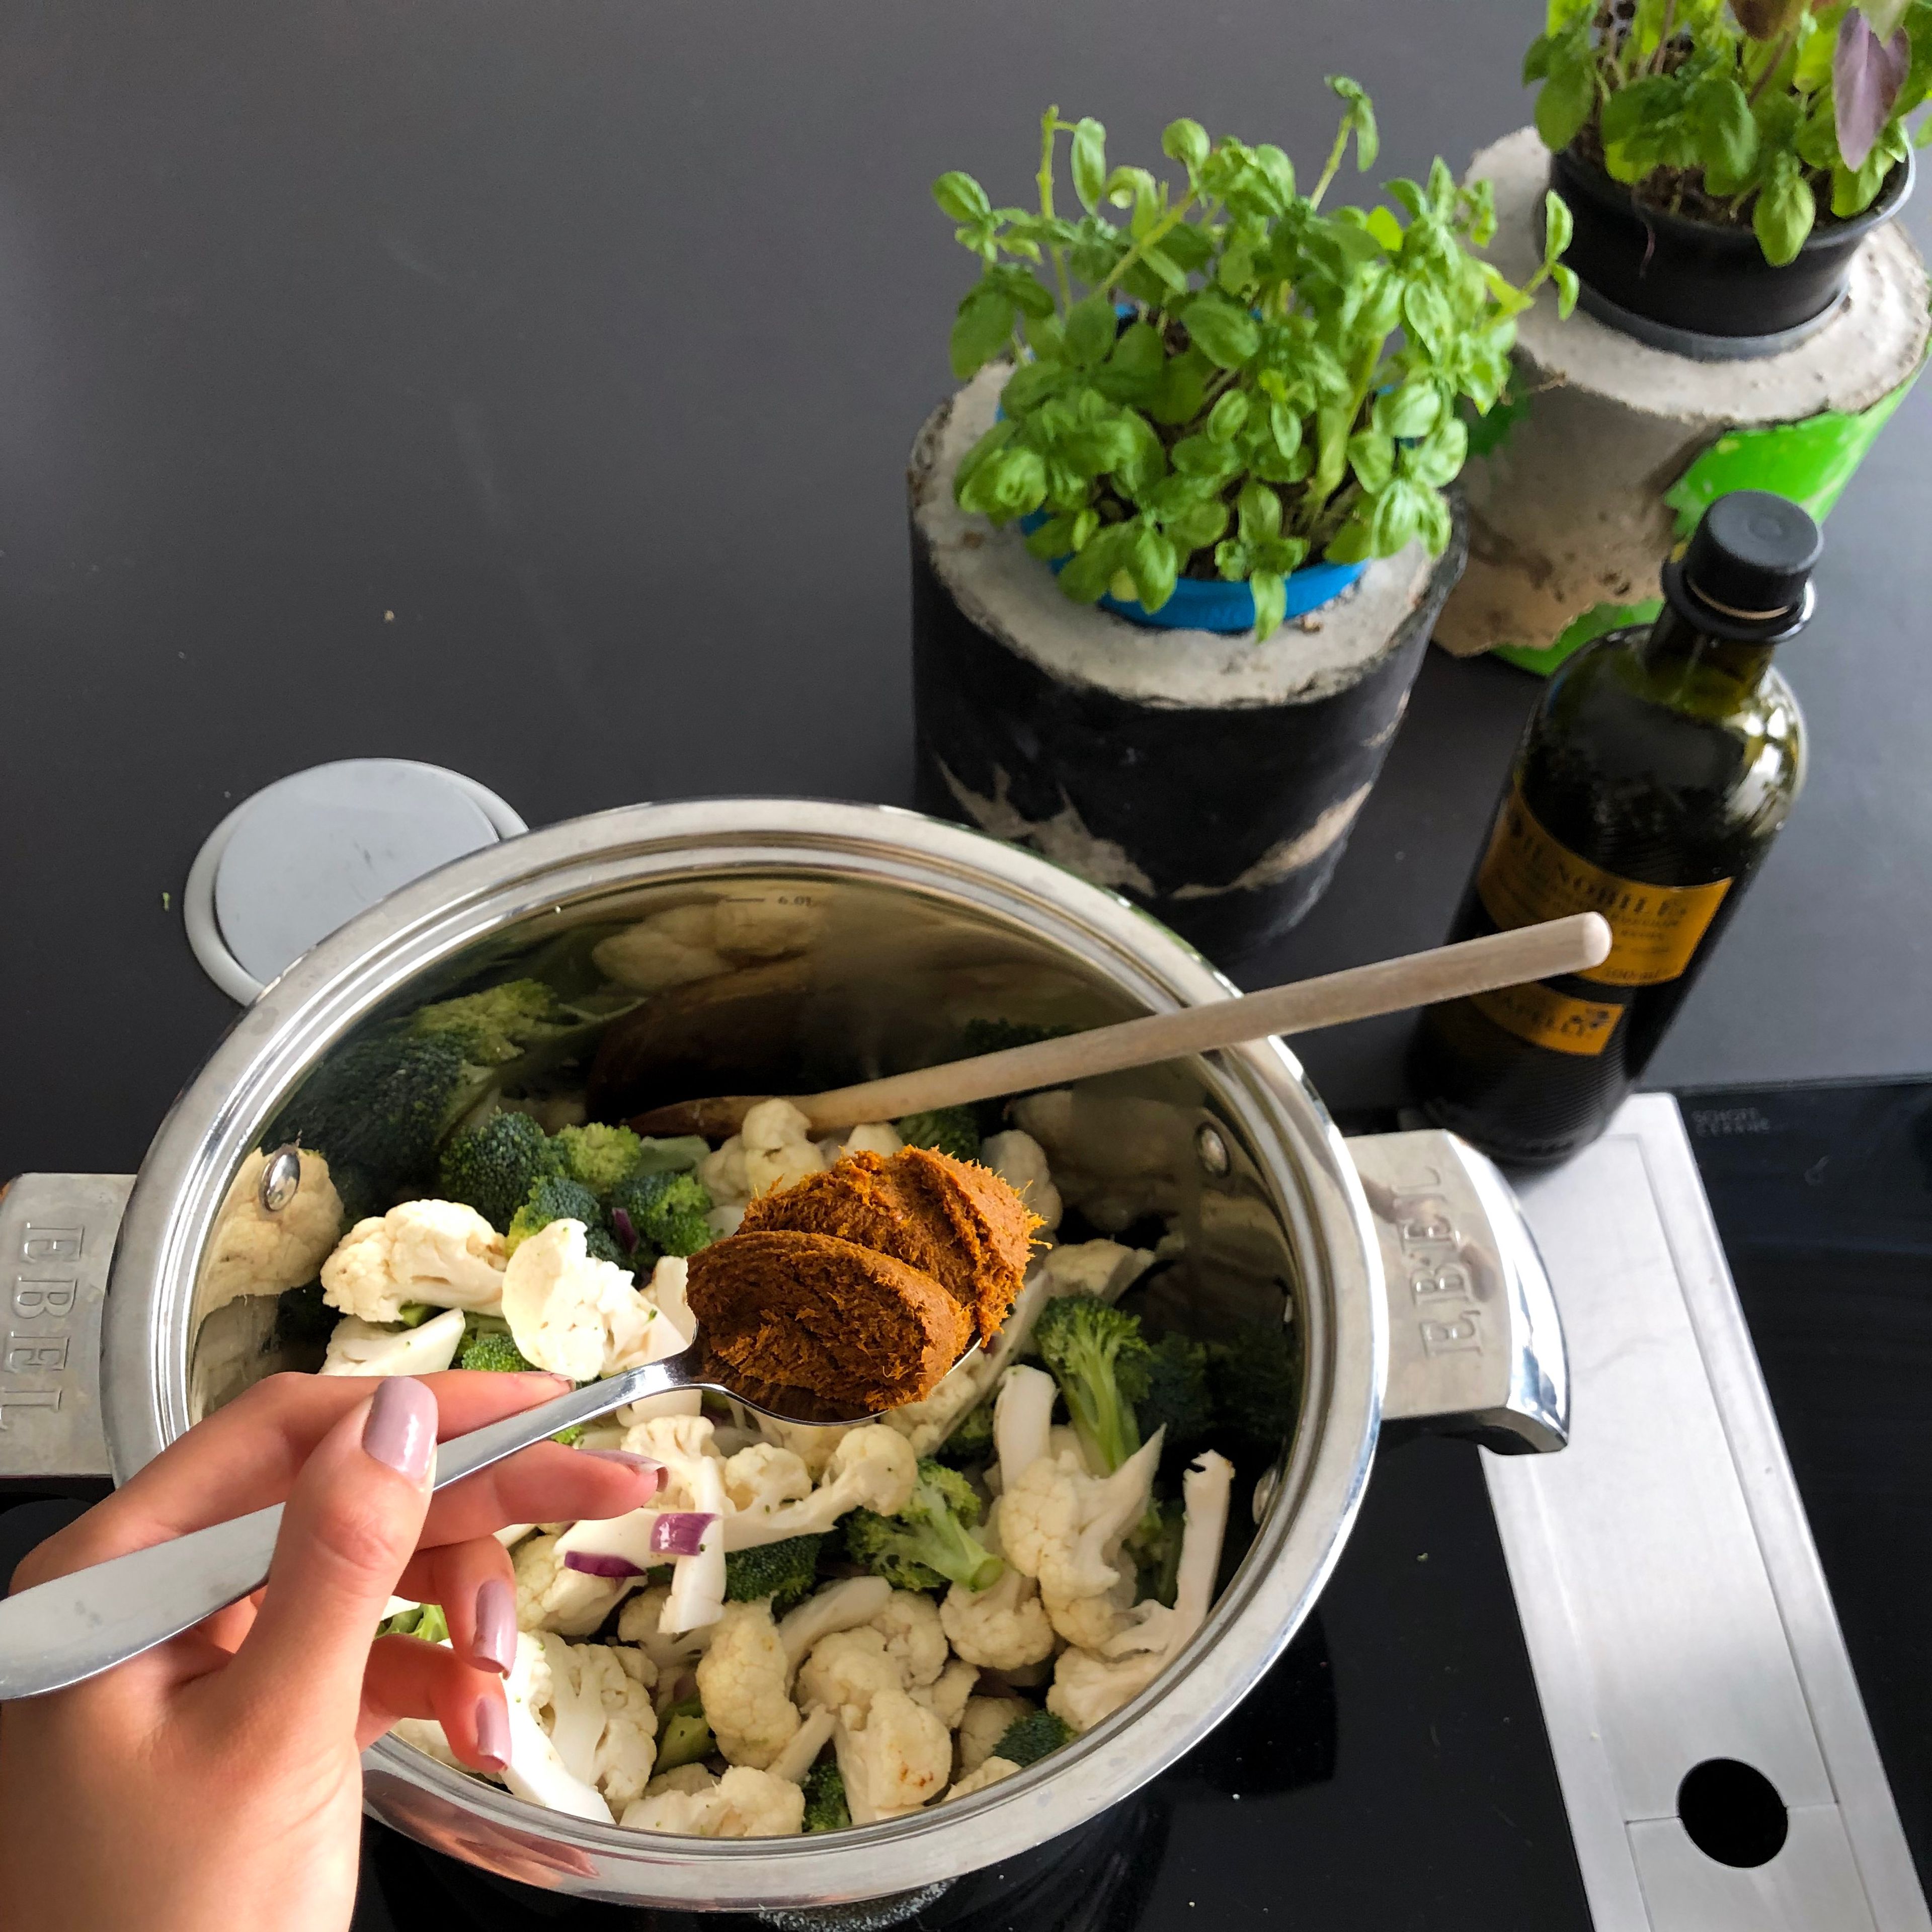 Blumenkohl, Brokkoli und Currypaste zu den Zwiebeln hinzufügen und drei Minuten mitdünsten. Je nach gewünschter Schärfe kann man zwischen roter und gelber Currypaste wählen.